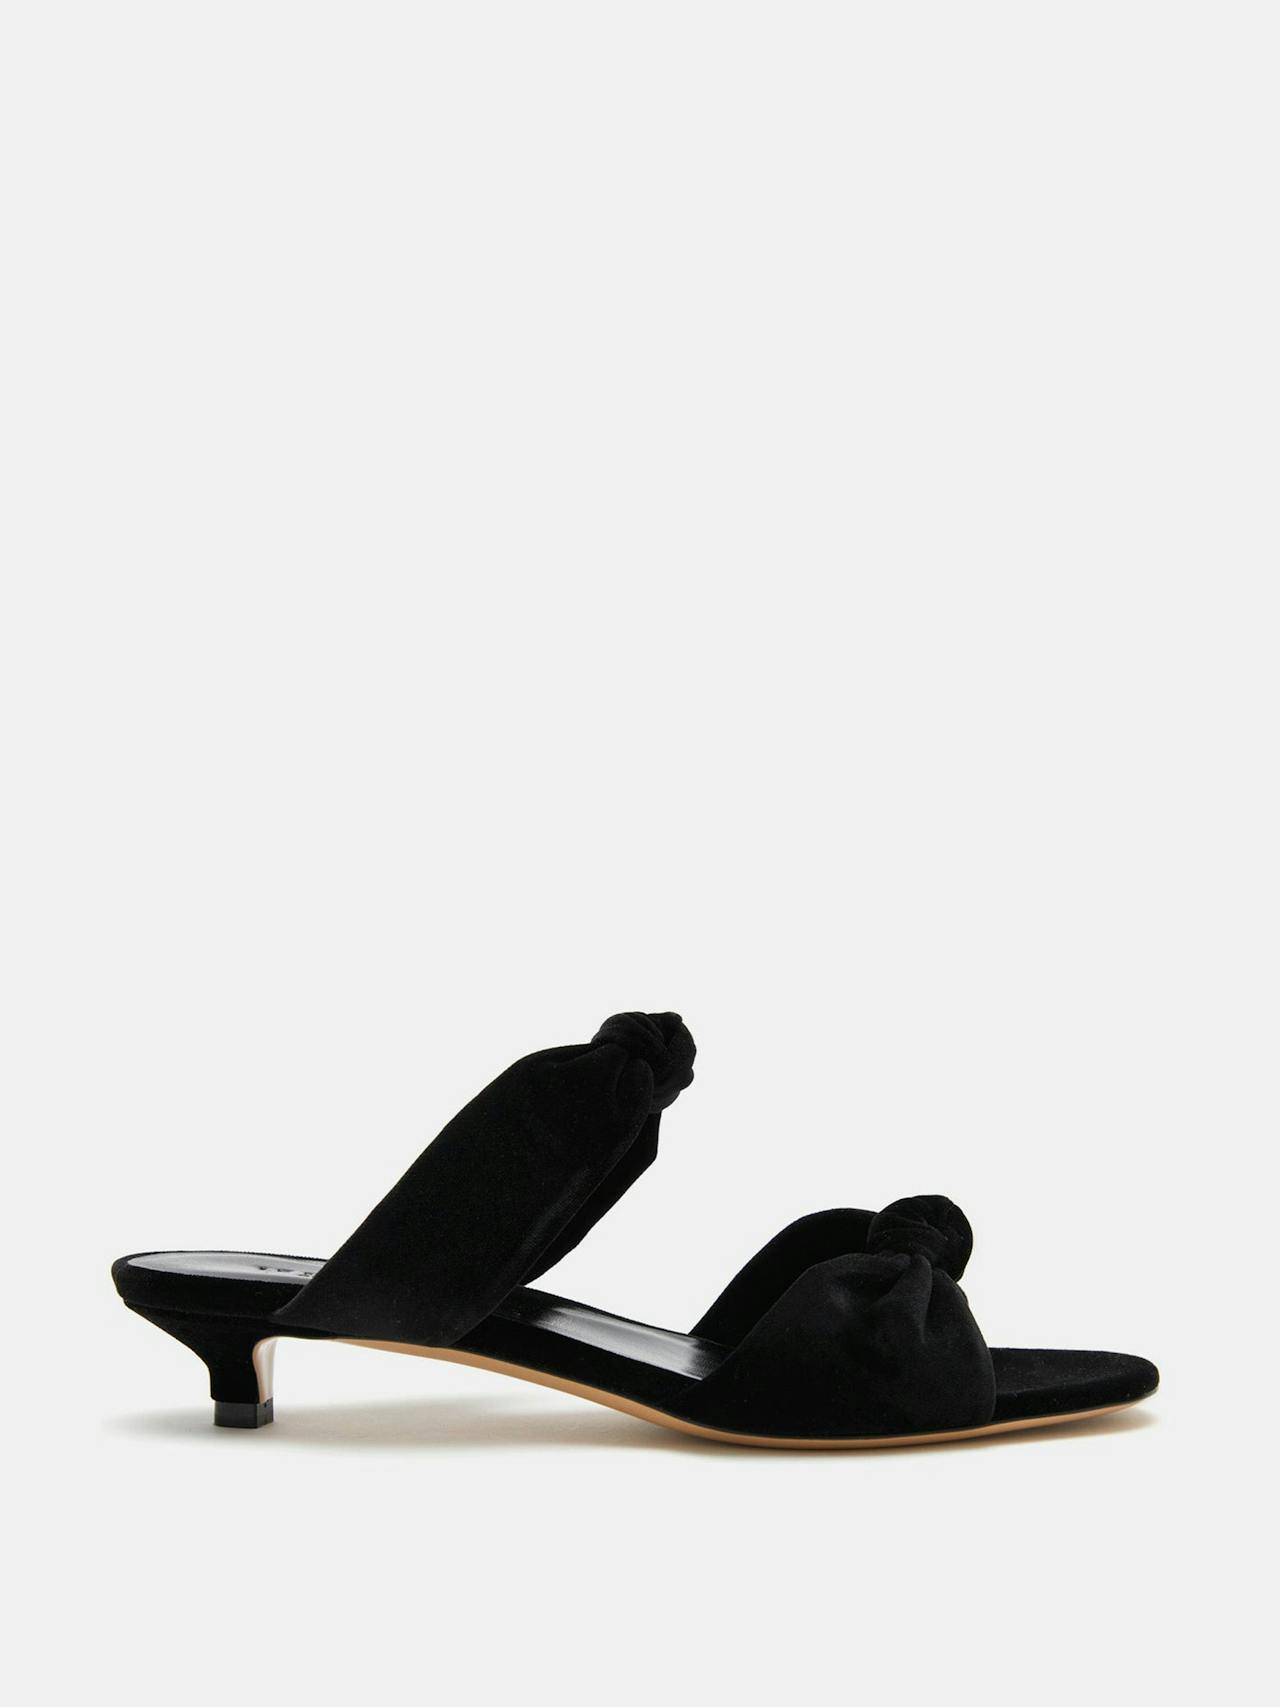 Black velvet knot sandal kitten heels